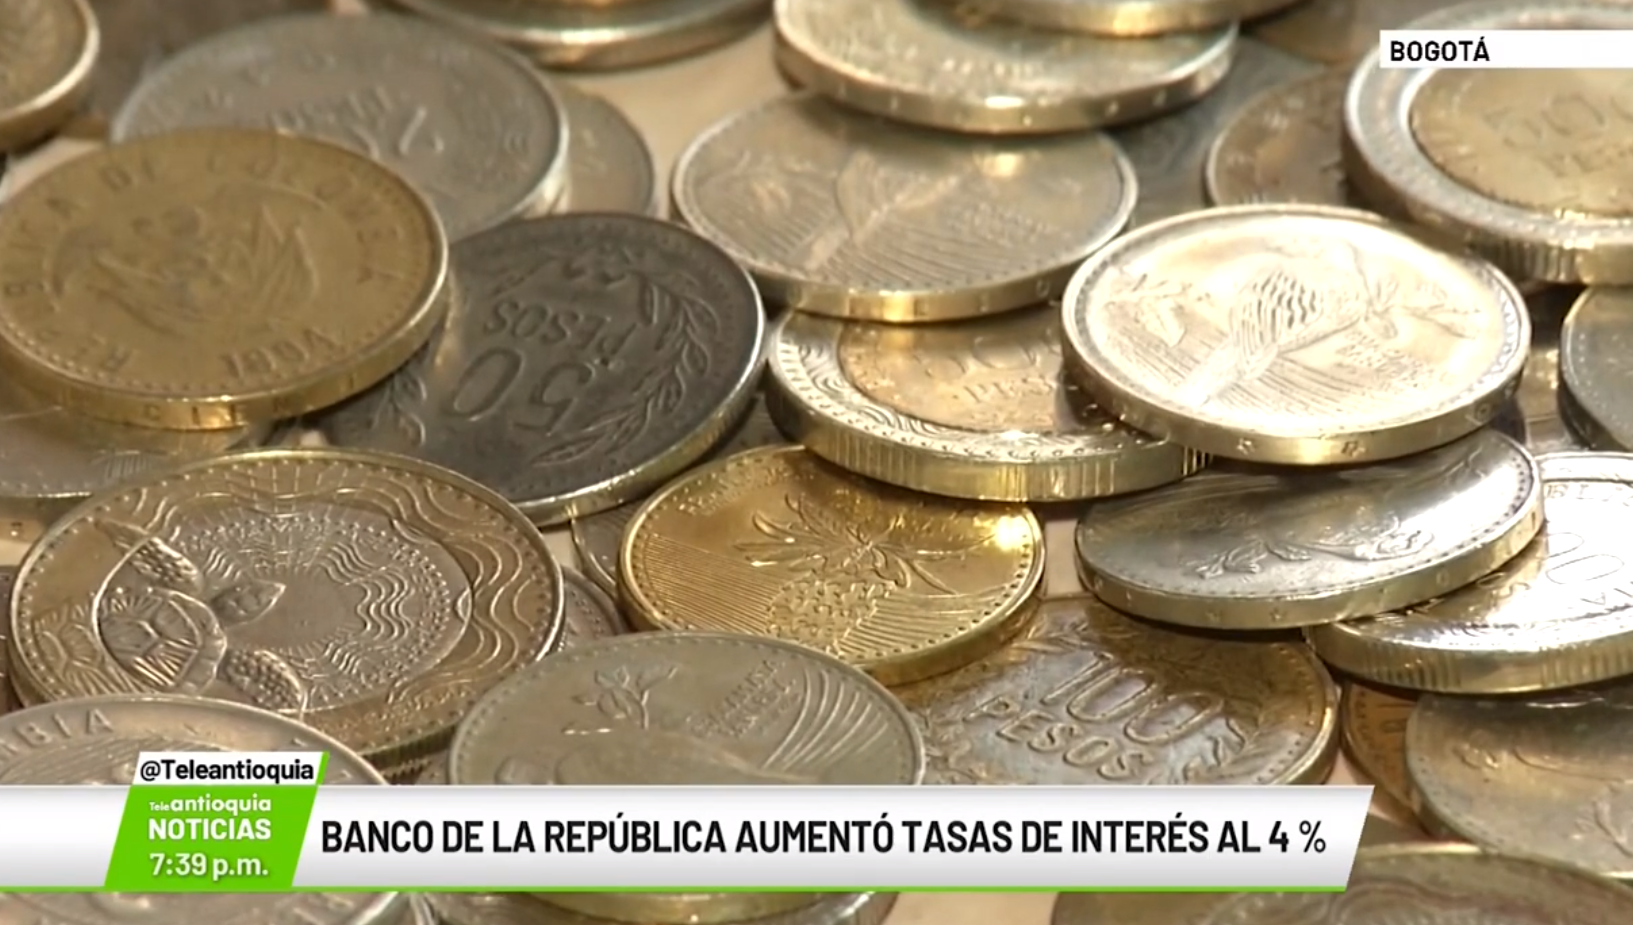 Banco de la República aumentó tasas de interés